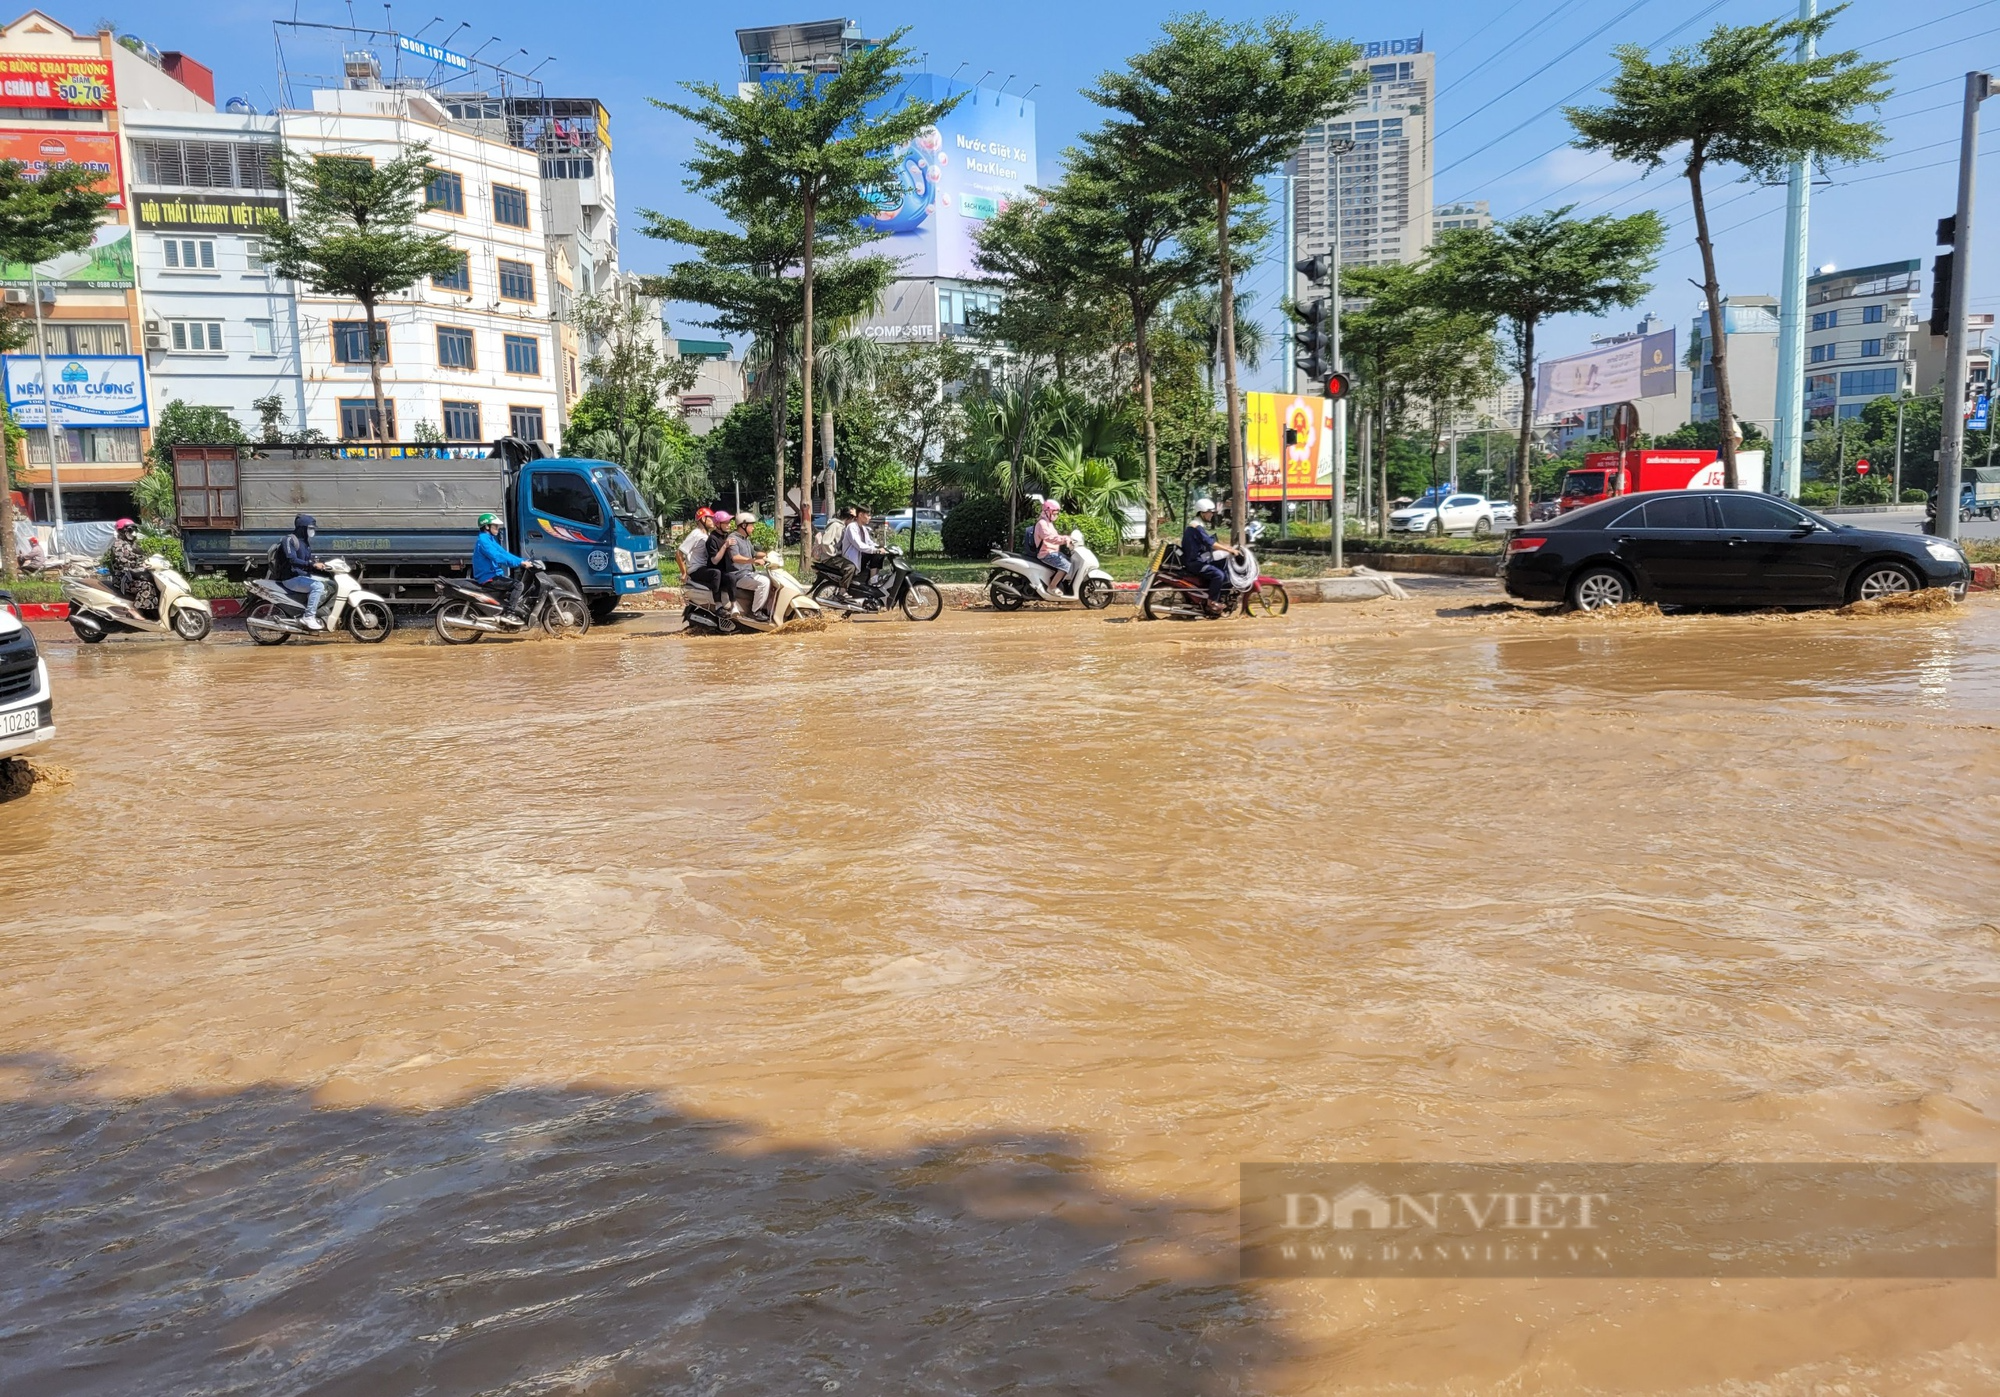  Nước tràn lênh láng trên mặt đường vừa thi công đường ống ở quận Hà Đông - Ảnh 4.